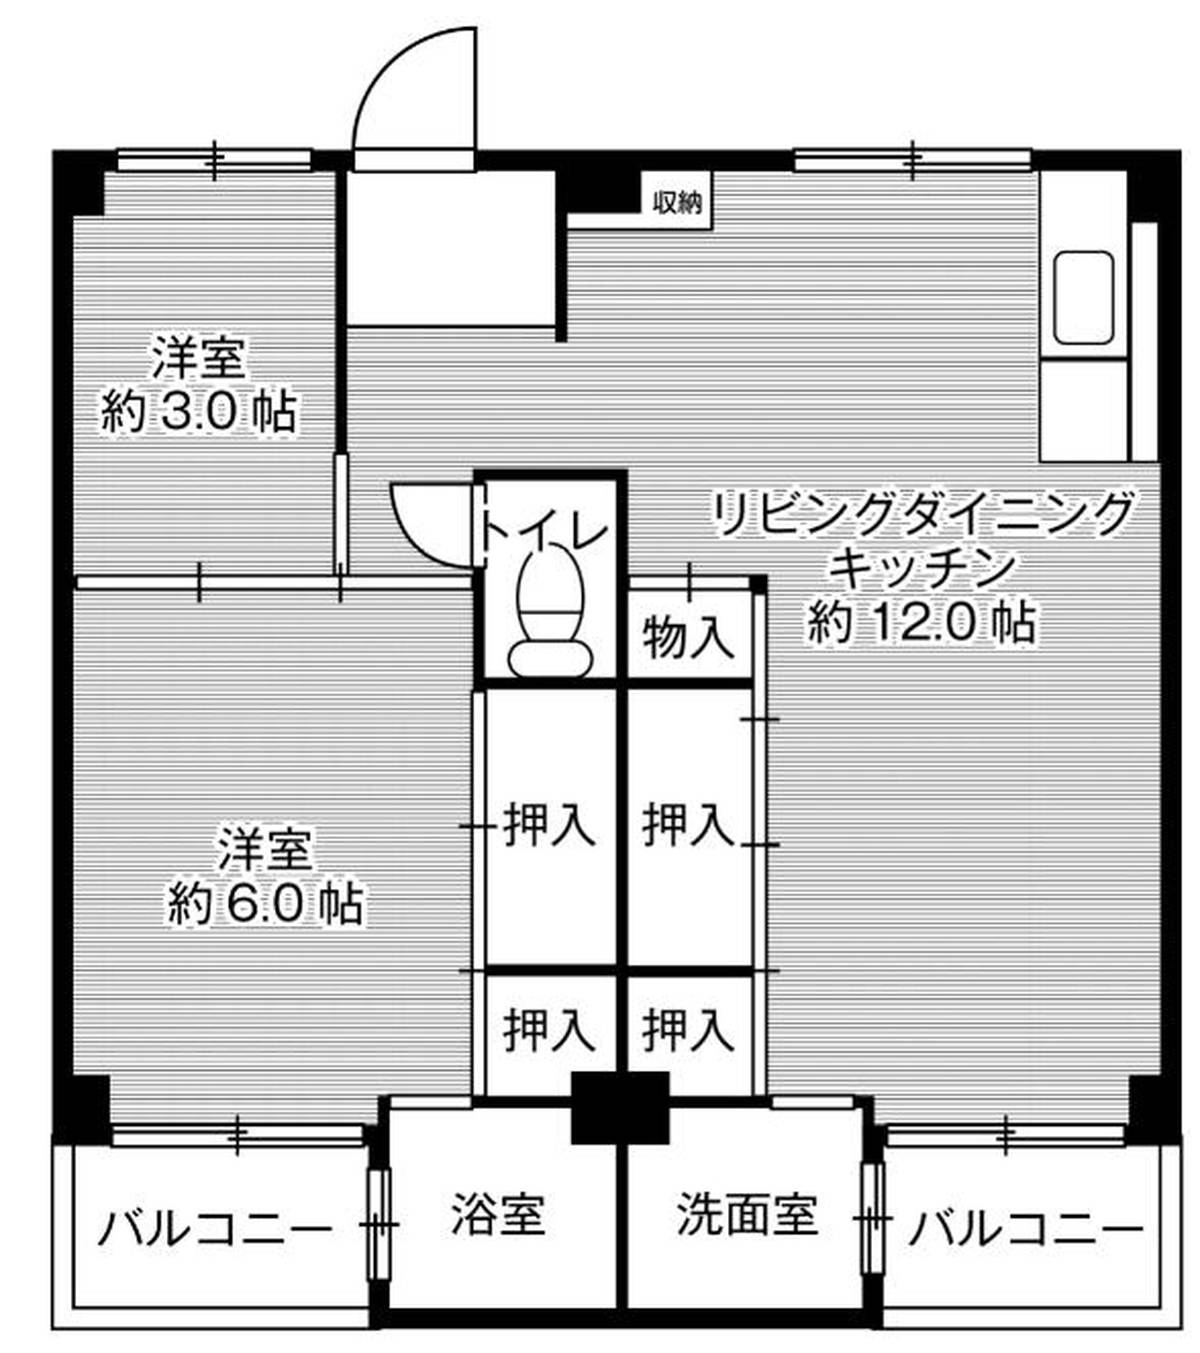 2LDK floorplan of Village House Kagata in Kawachinagano-shi